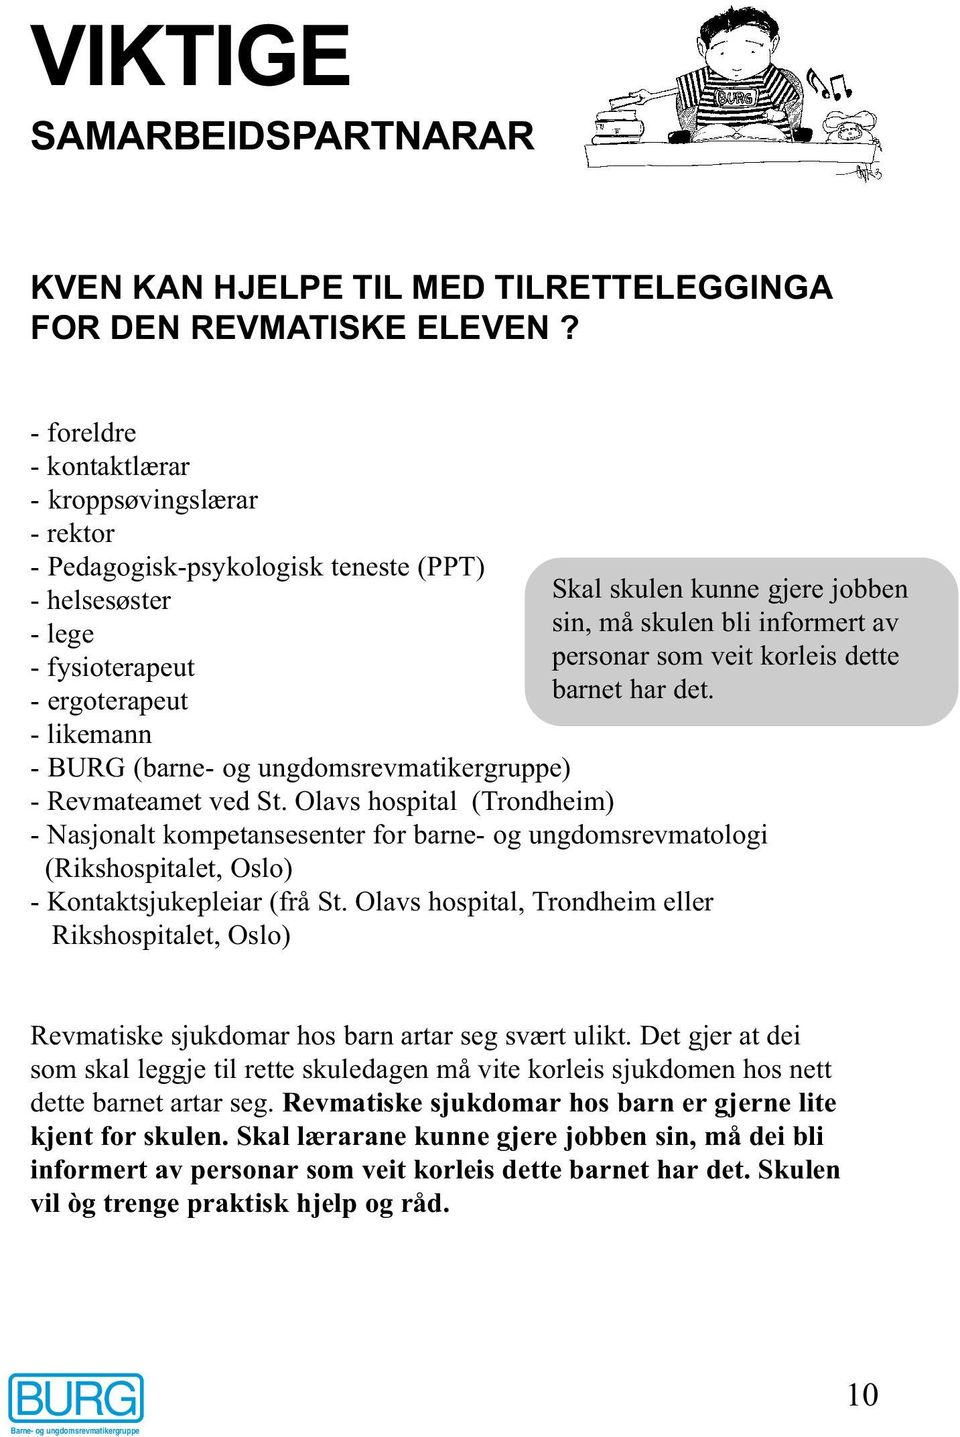 Revmateamet ved St. Olavs hospital (Trondheim) Skal skulen kunne gjere jobben sin, må skulen bli informert av personar som veit korleis dette barnet har det.